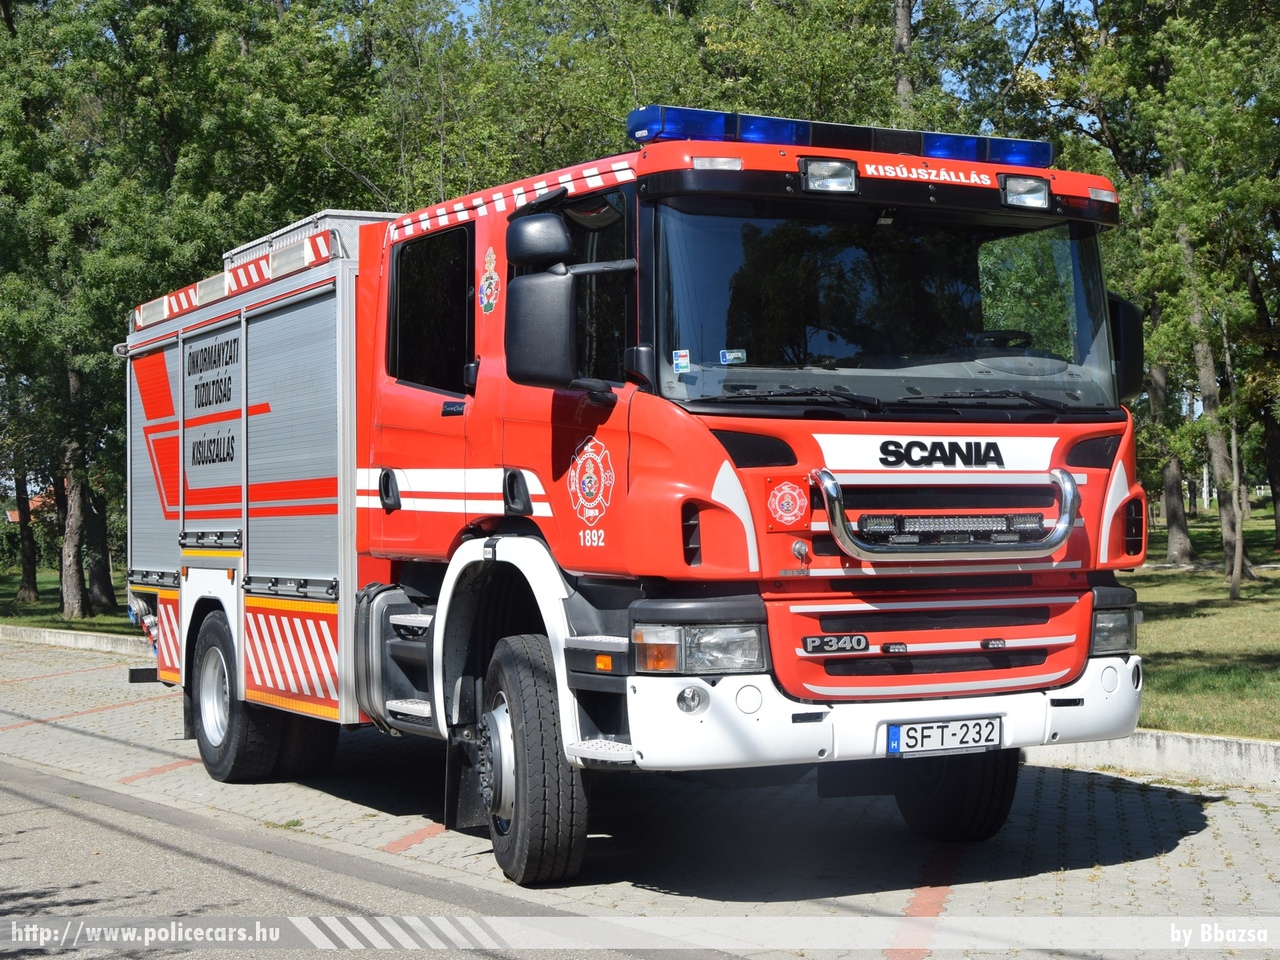 Scania P340, Kisújszállási Önkormányzati Tûzoltóparancsnokság, fotó: Bbazsa
Keywords: tûzoltóautó tûzoltó ÖTP tûzoltóság magyar Magyarország fire firetruck Hungary hungarian SFT-232